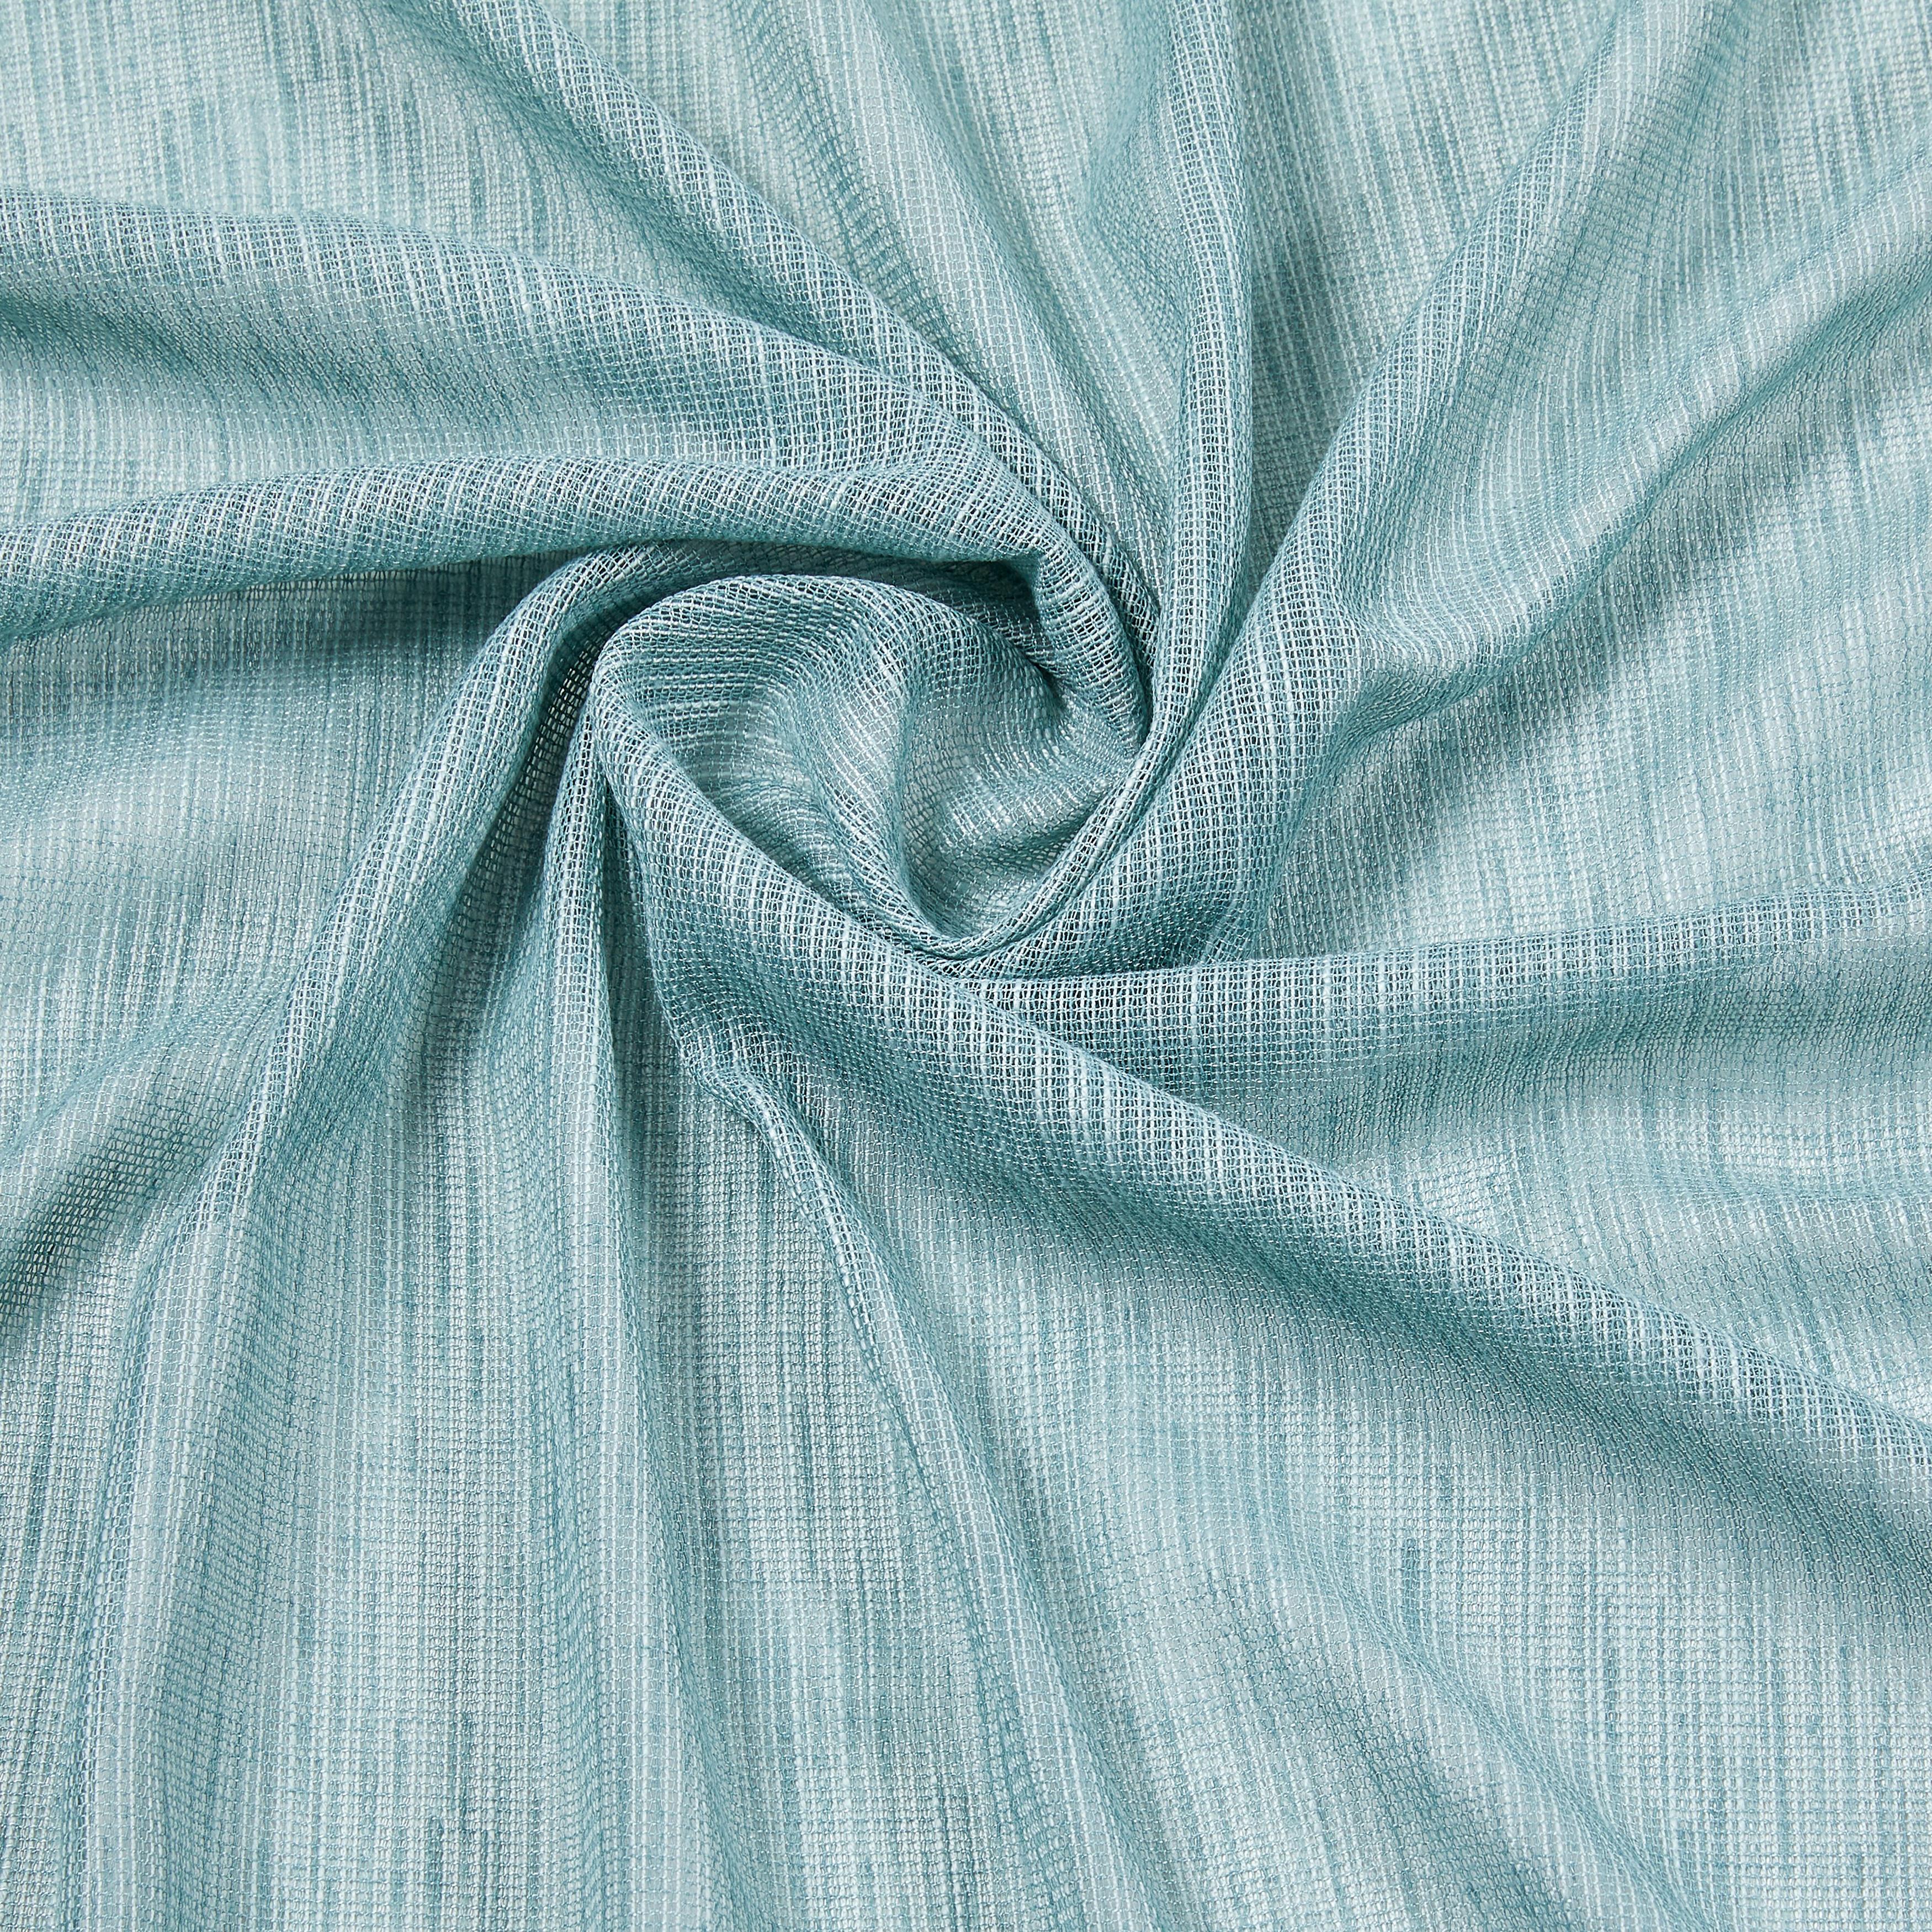 Končana Zavesa Eva - žadasto zelena, Romantika, tekstil (140/255cm) - Premium Living